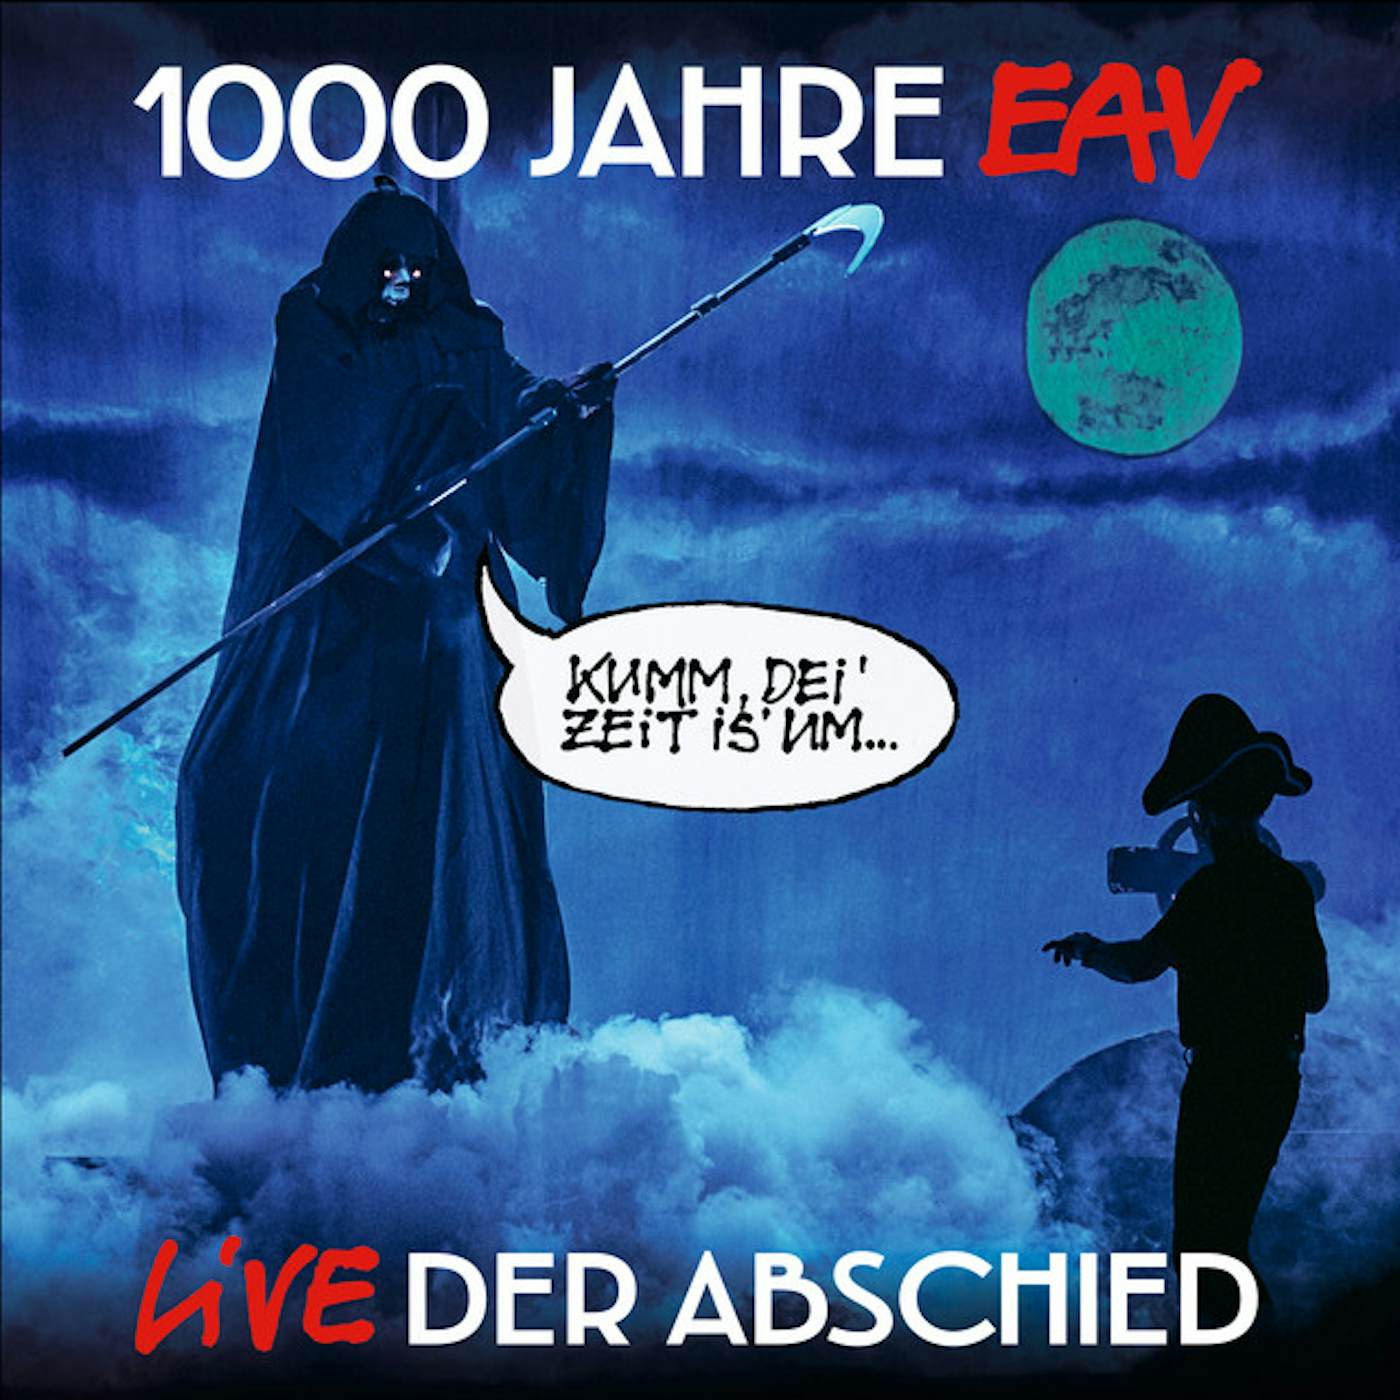 1000 JAHRE EAV LIVE: DER ABSCHIED CD